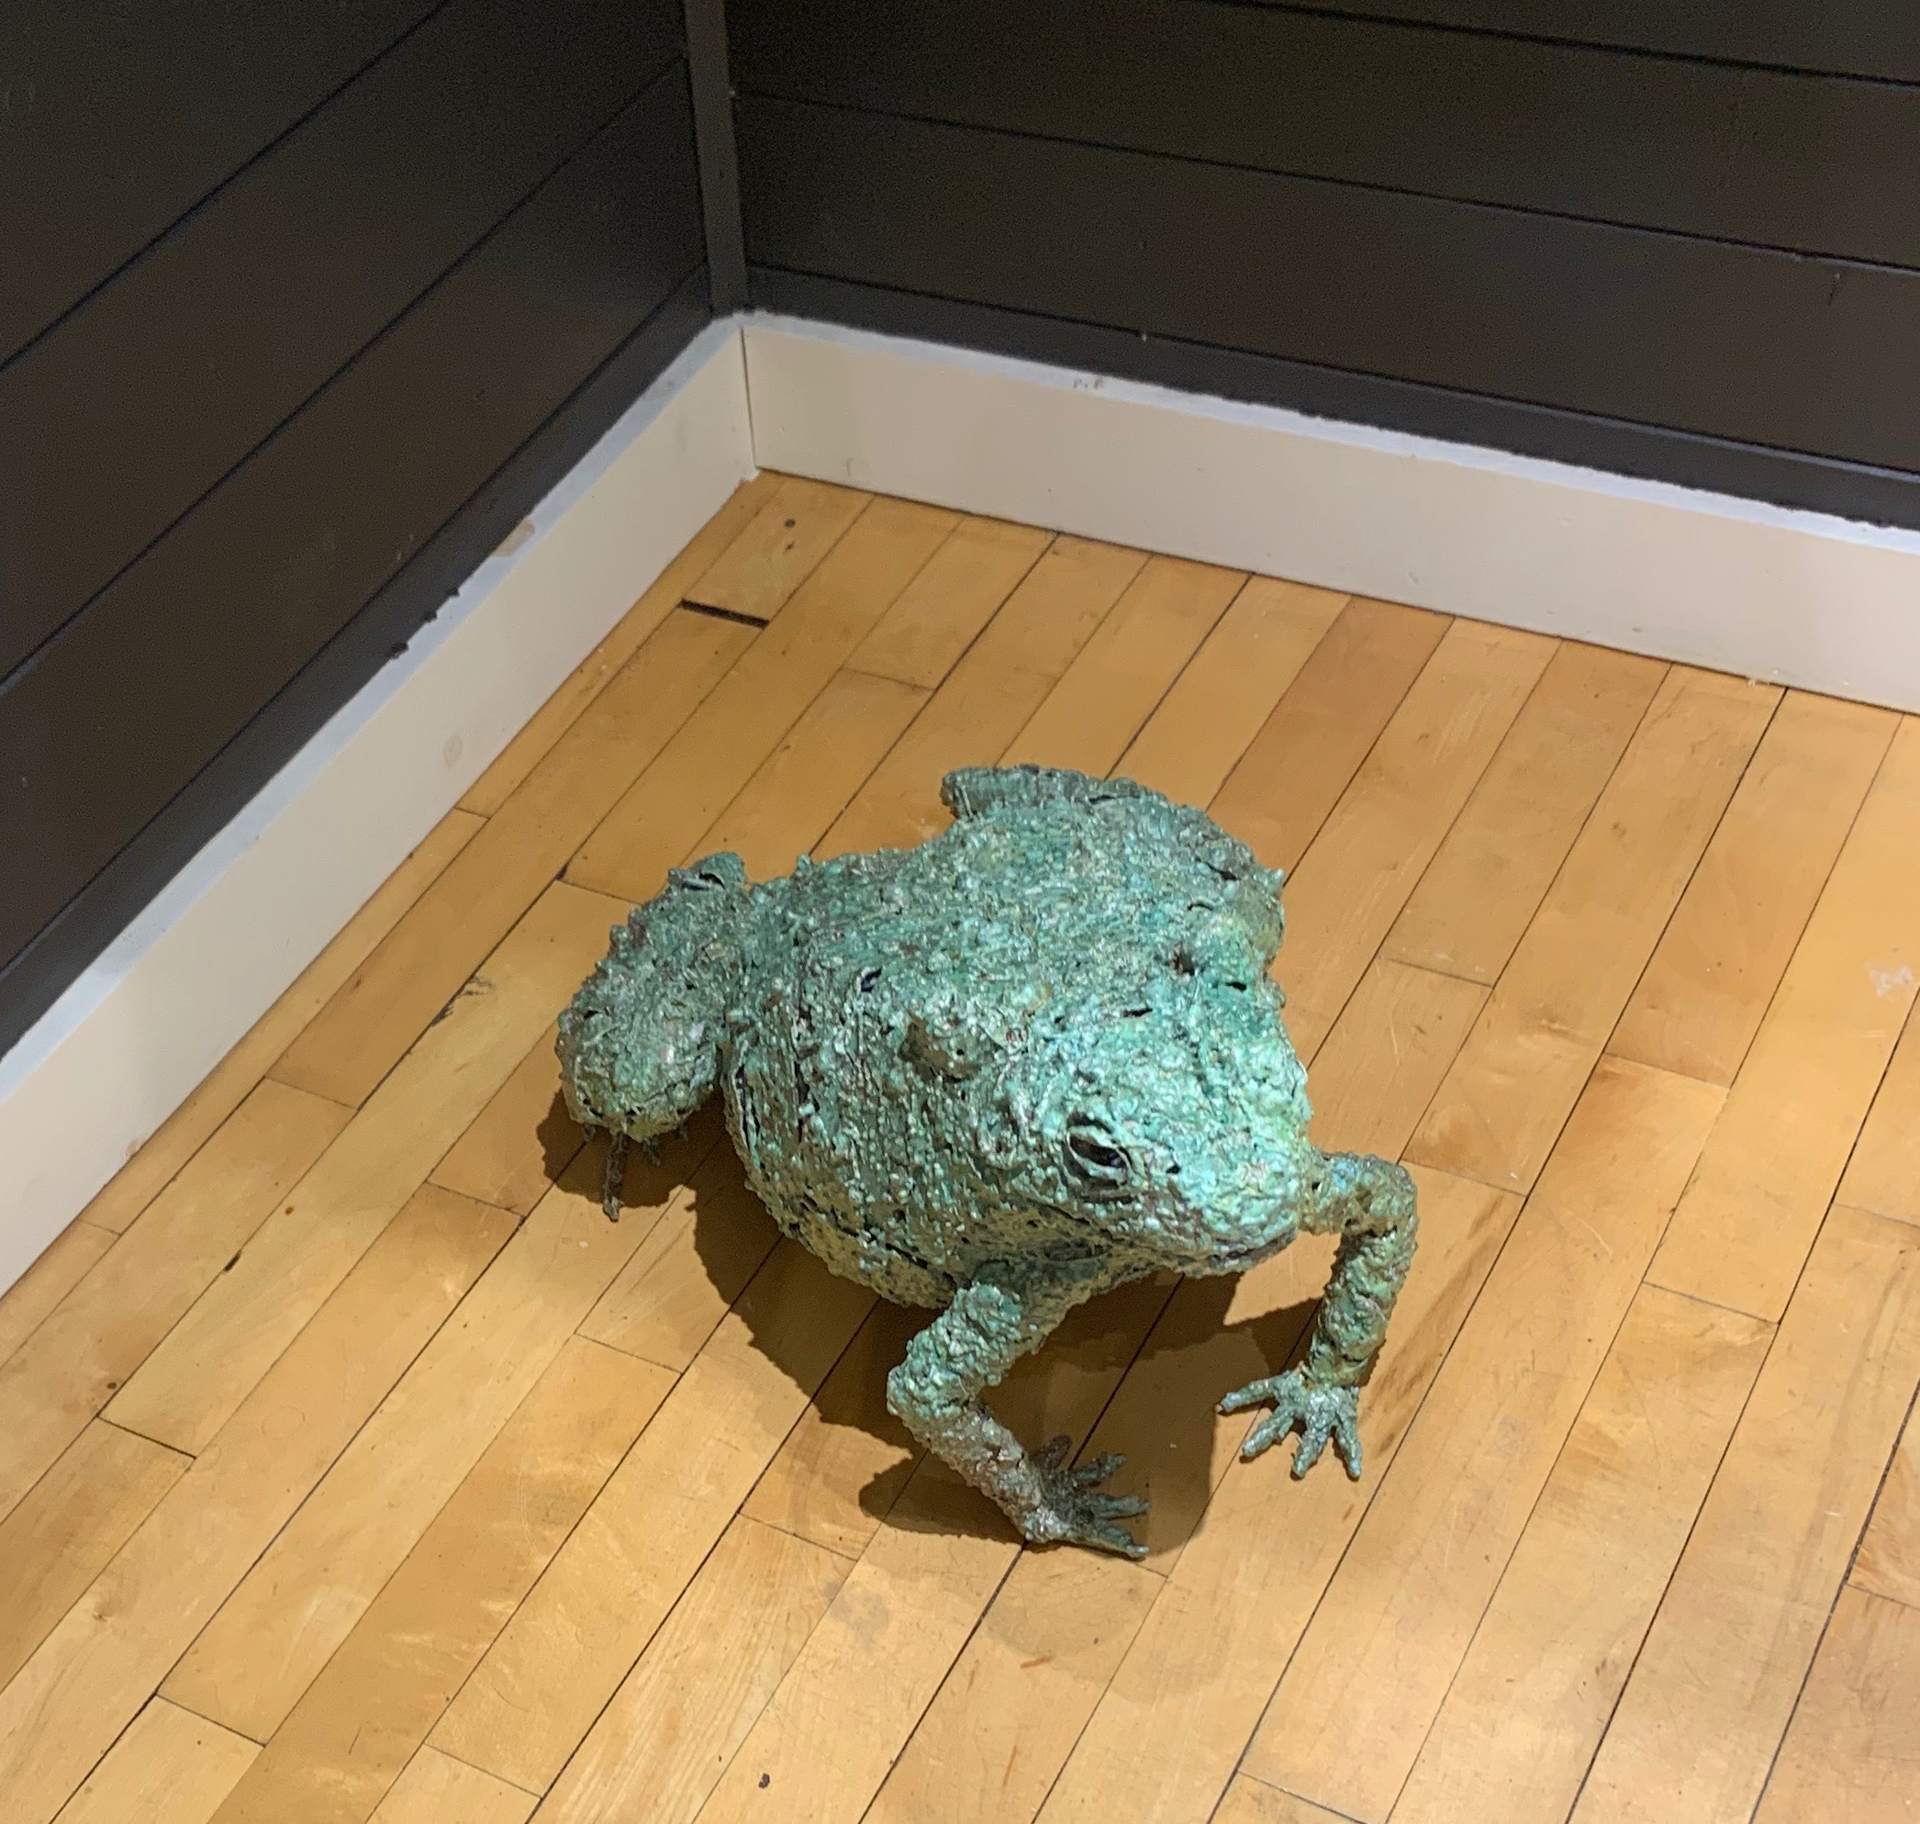 Toad by William Allen